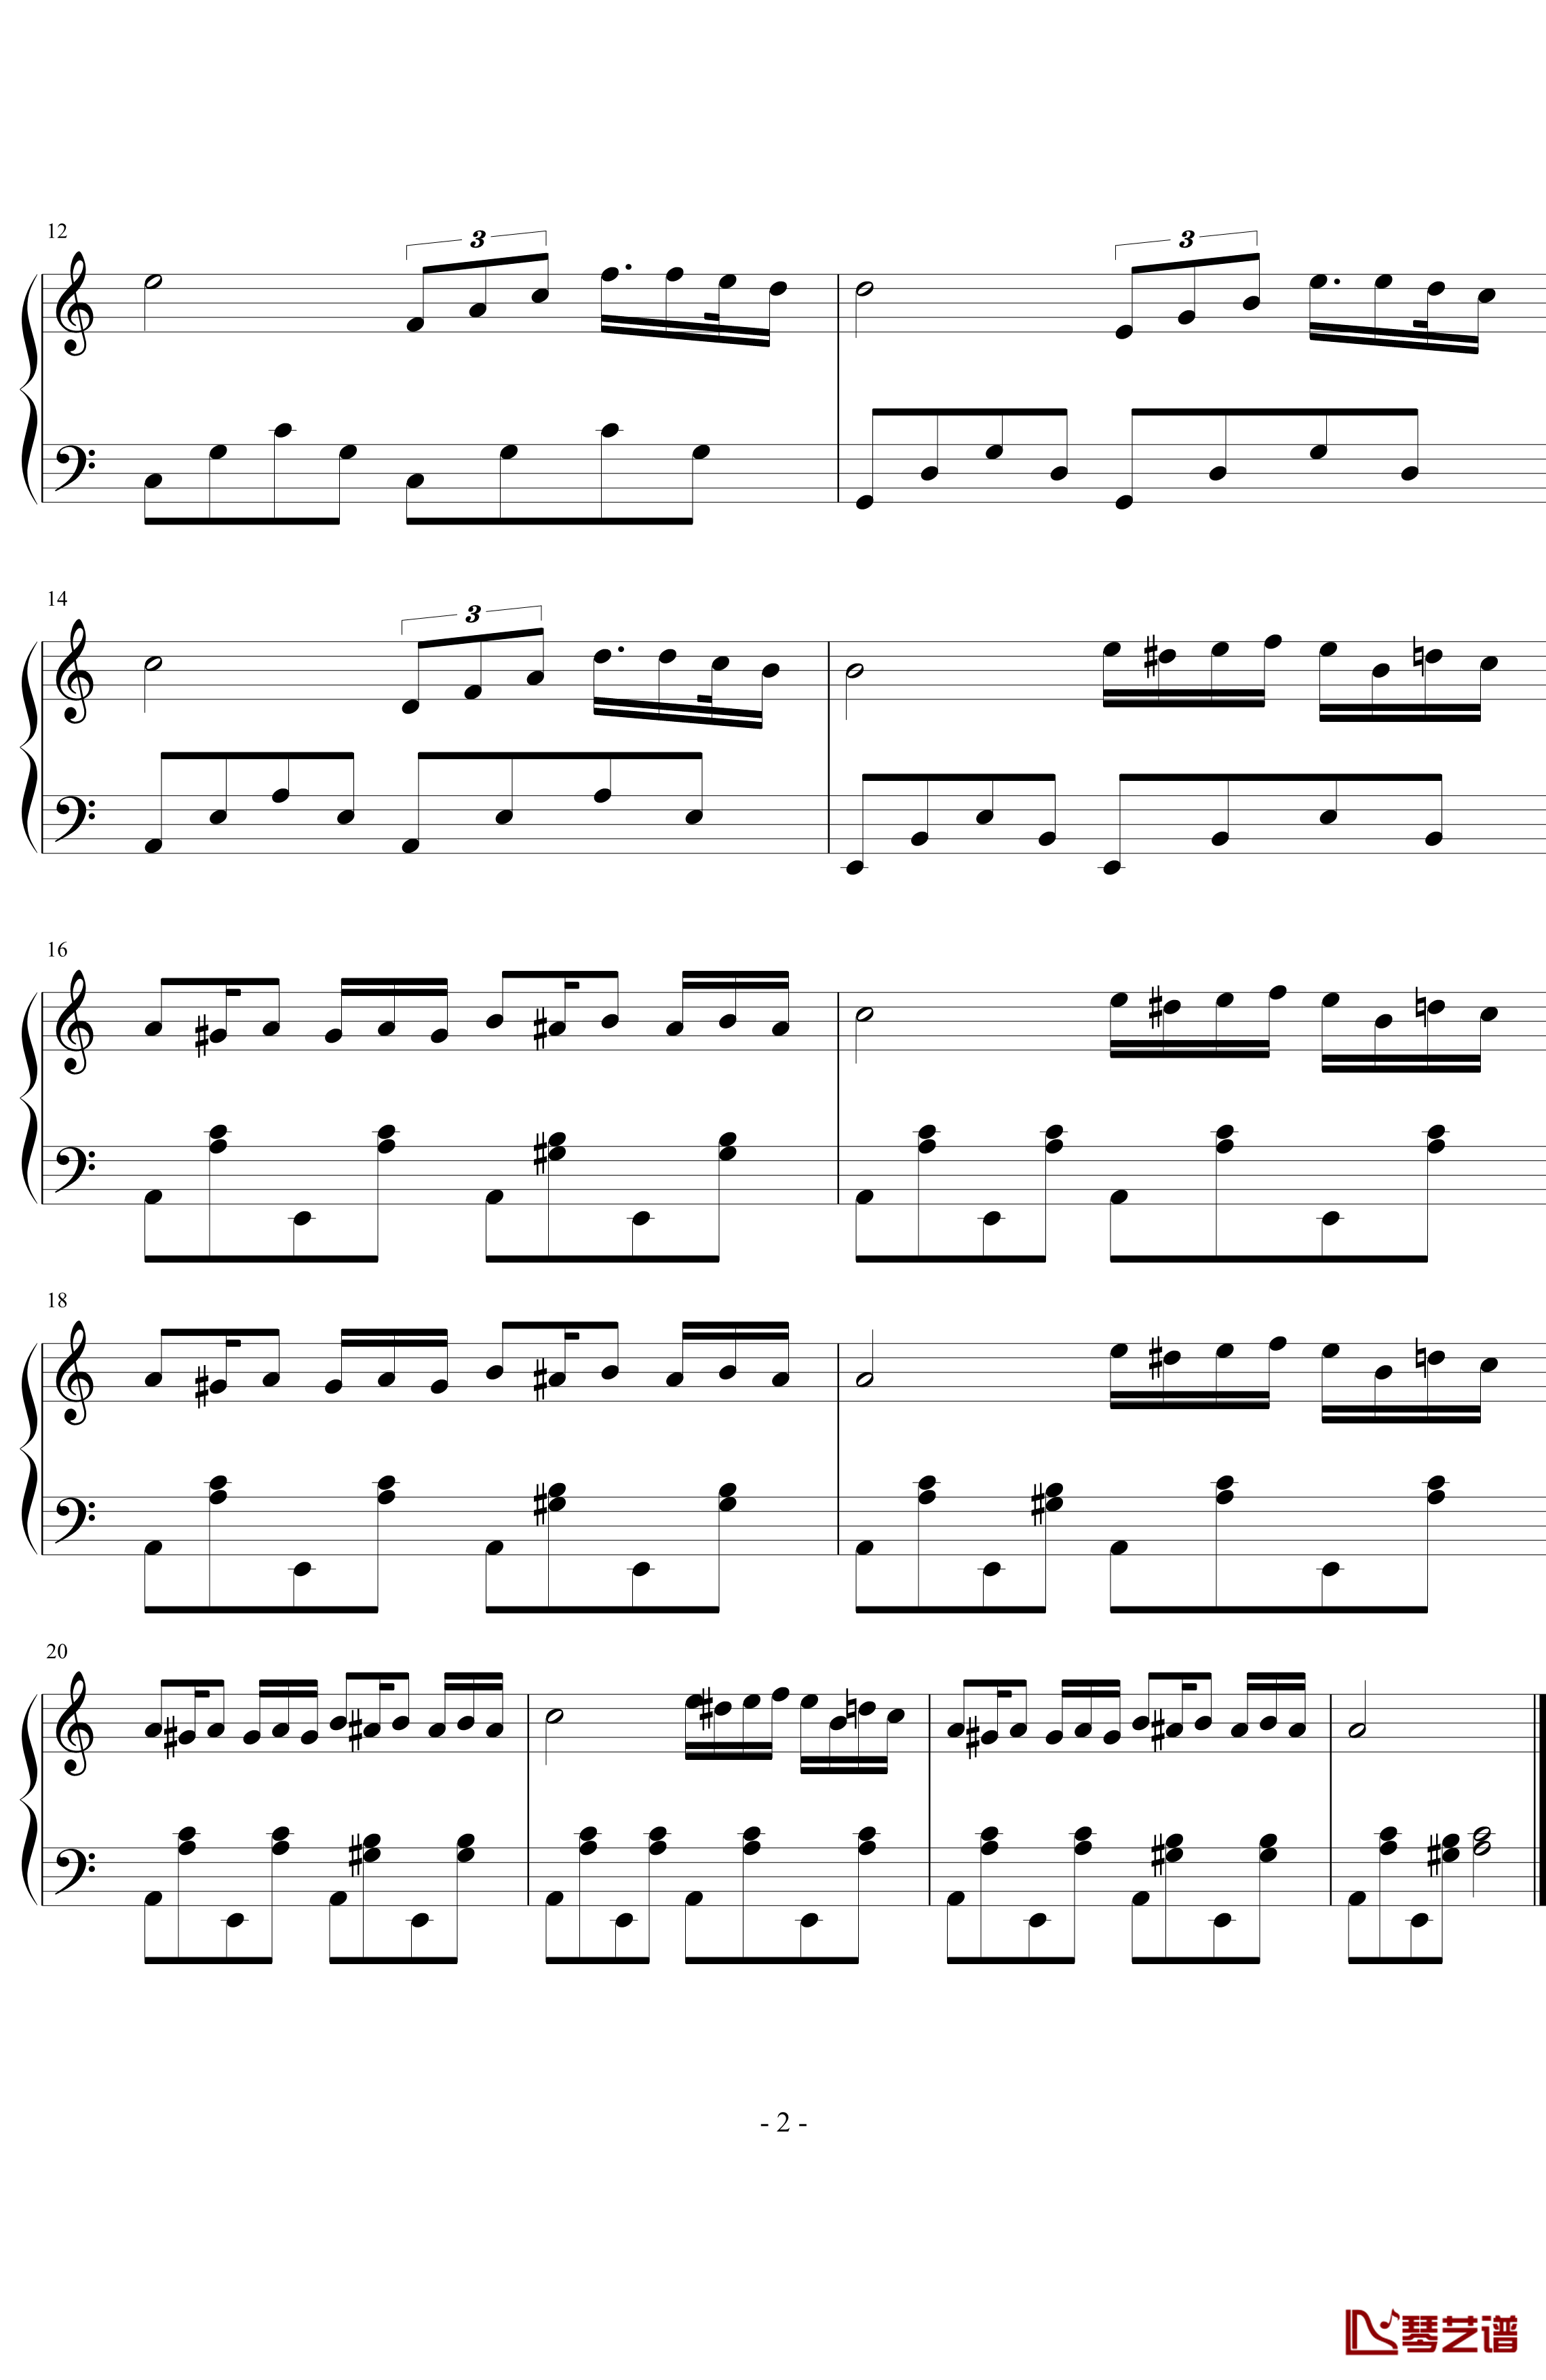 乱弹爱丽丝钢琴谱-贝多芬-beethoven2